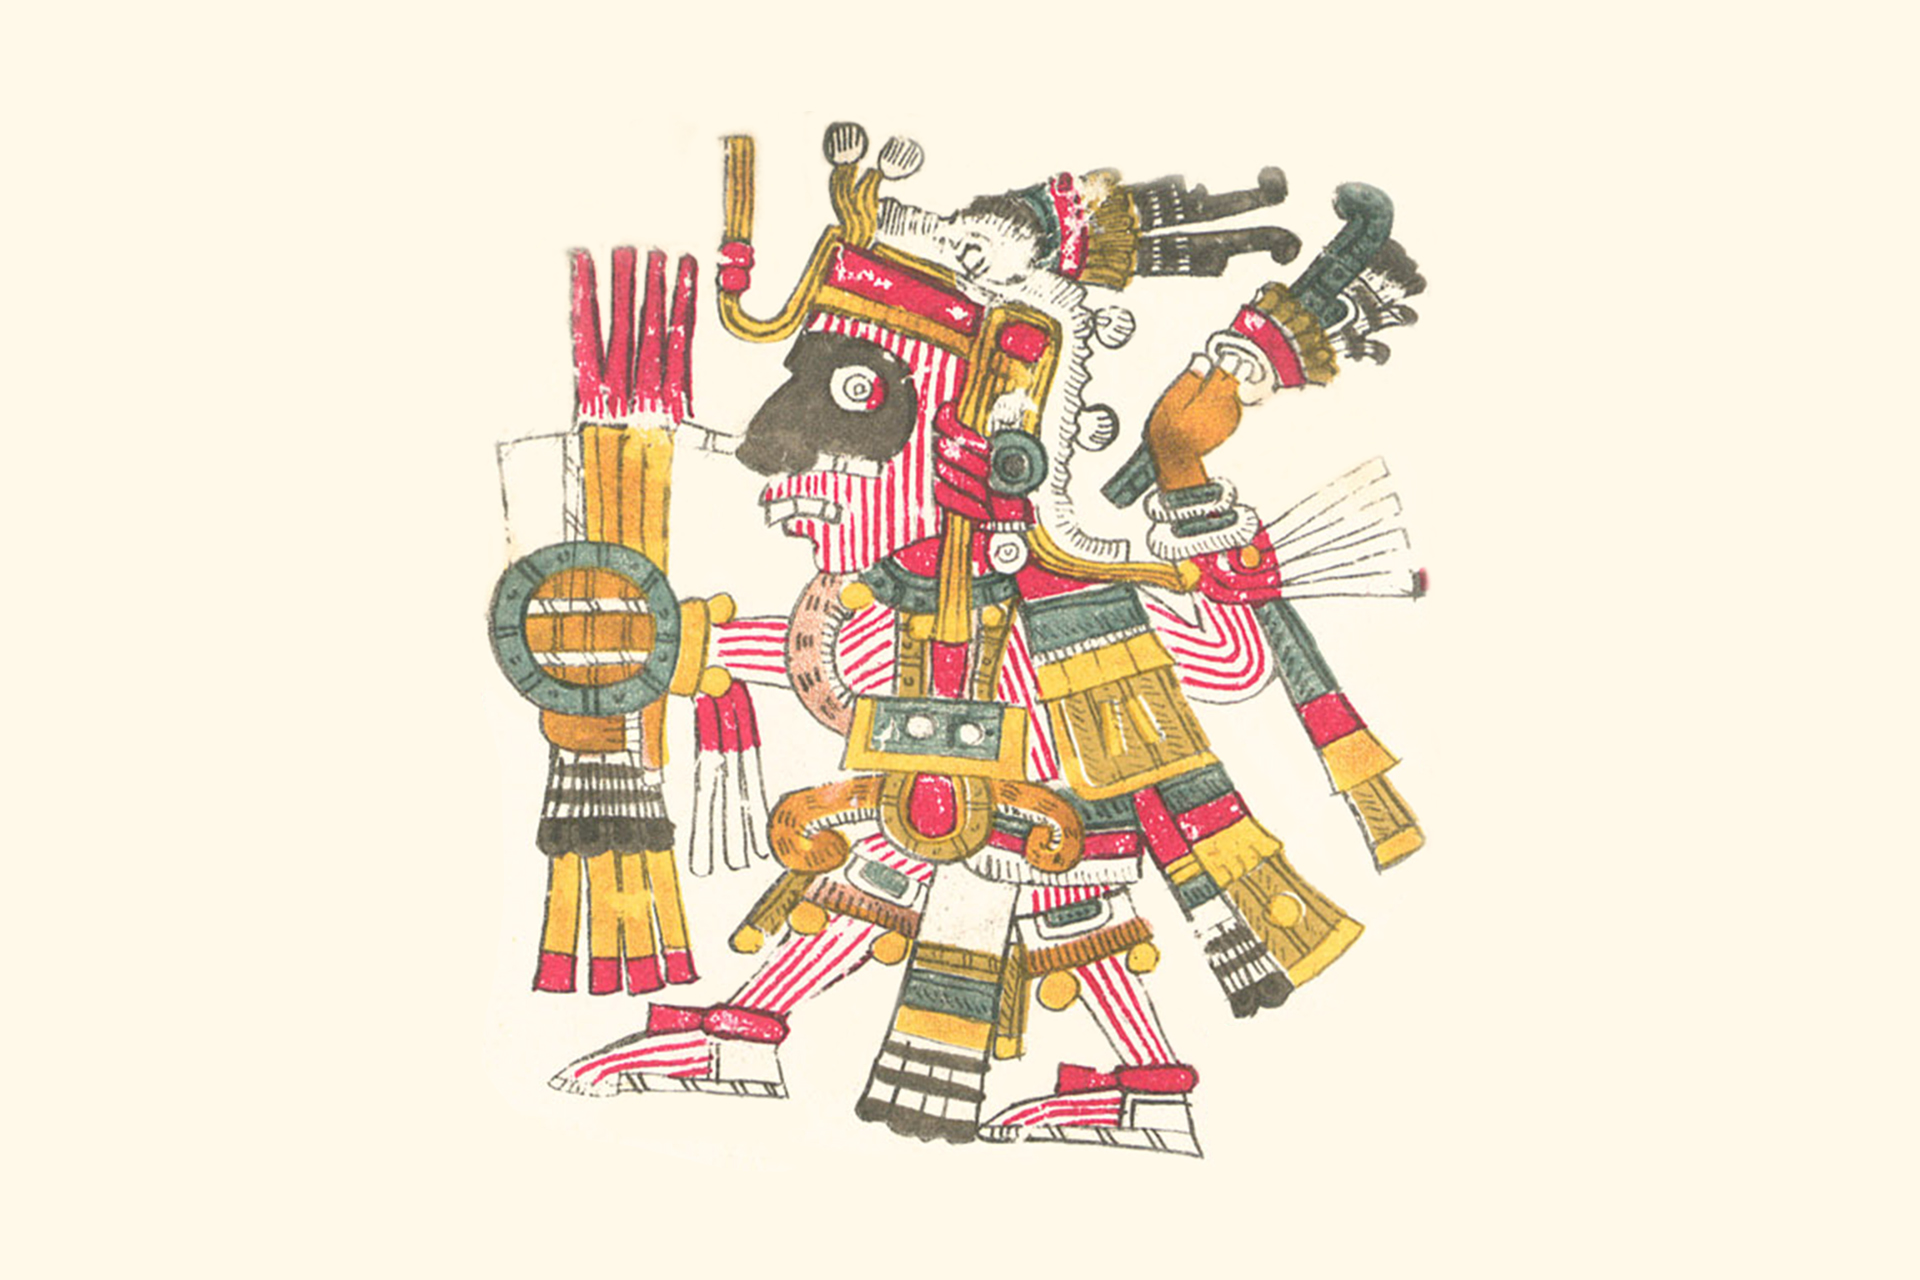 aztec gods drawings